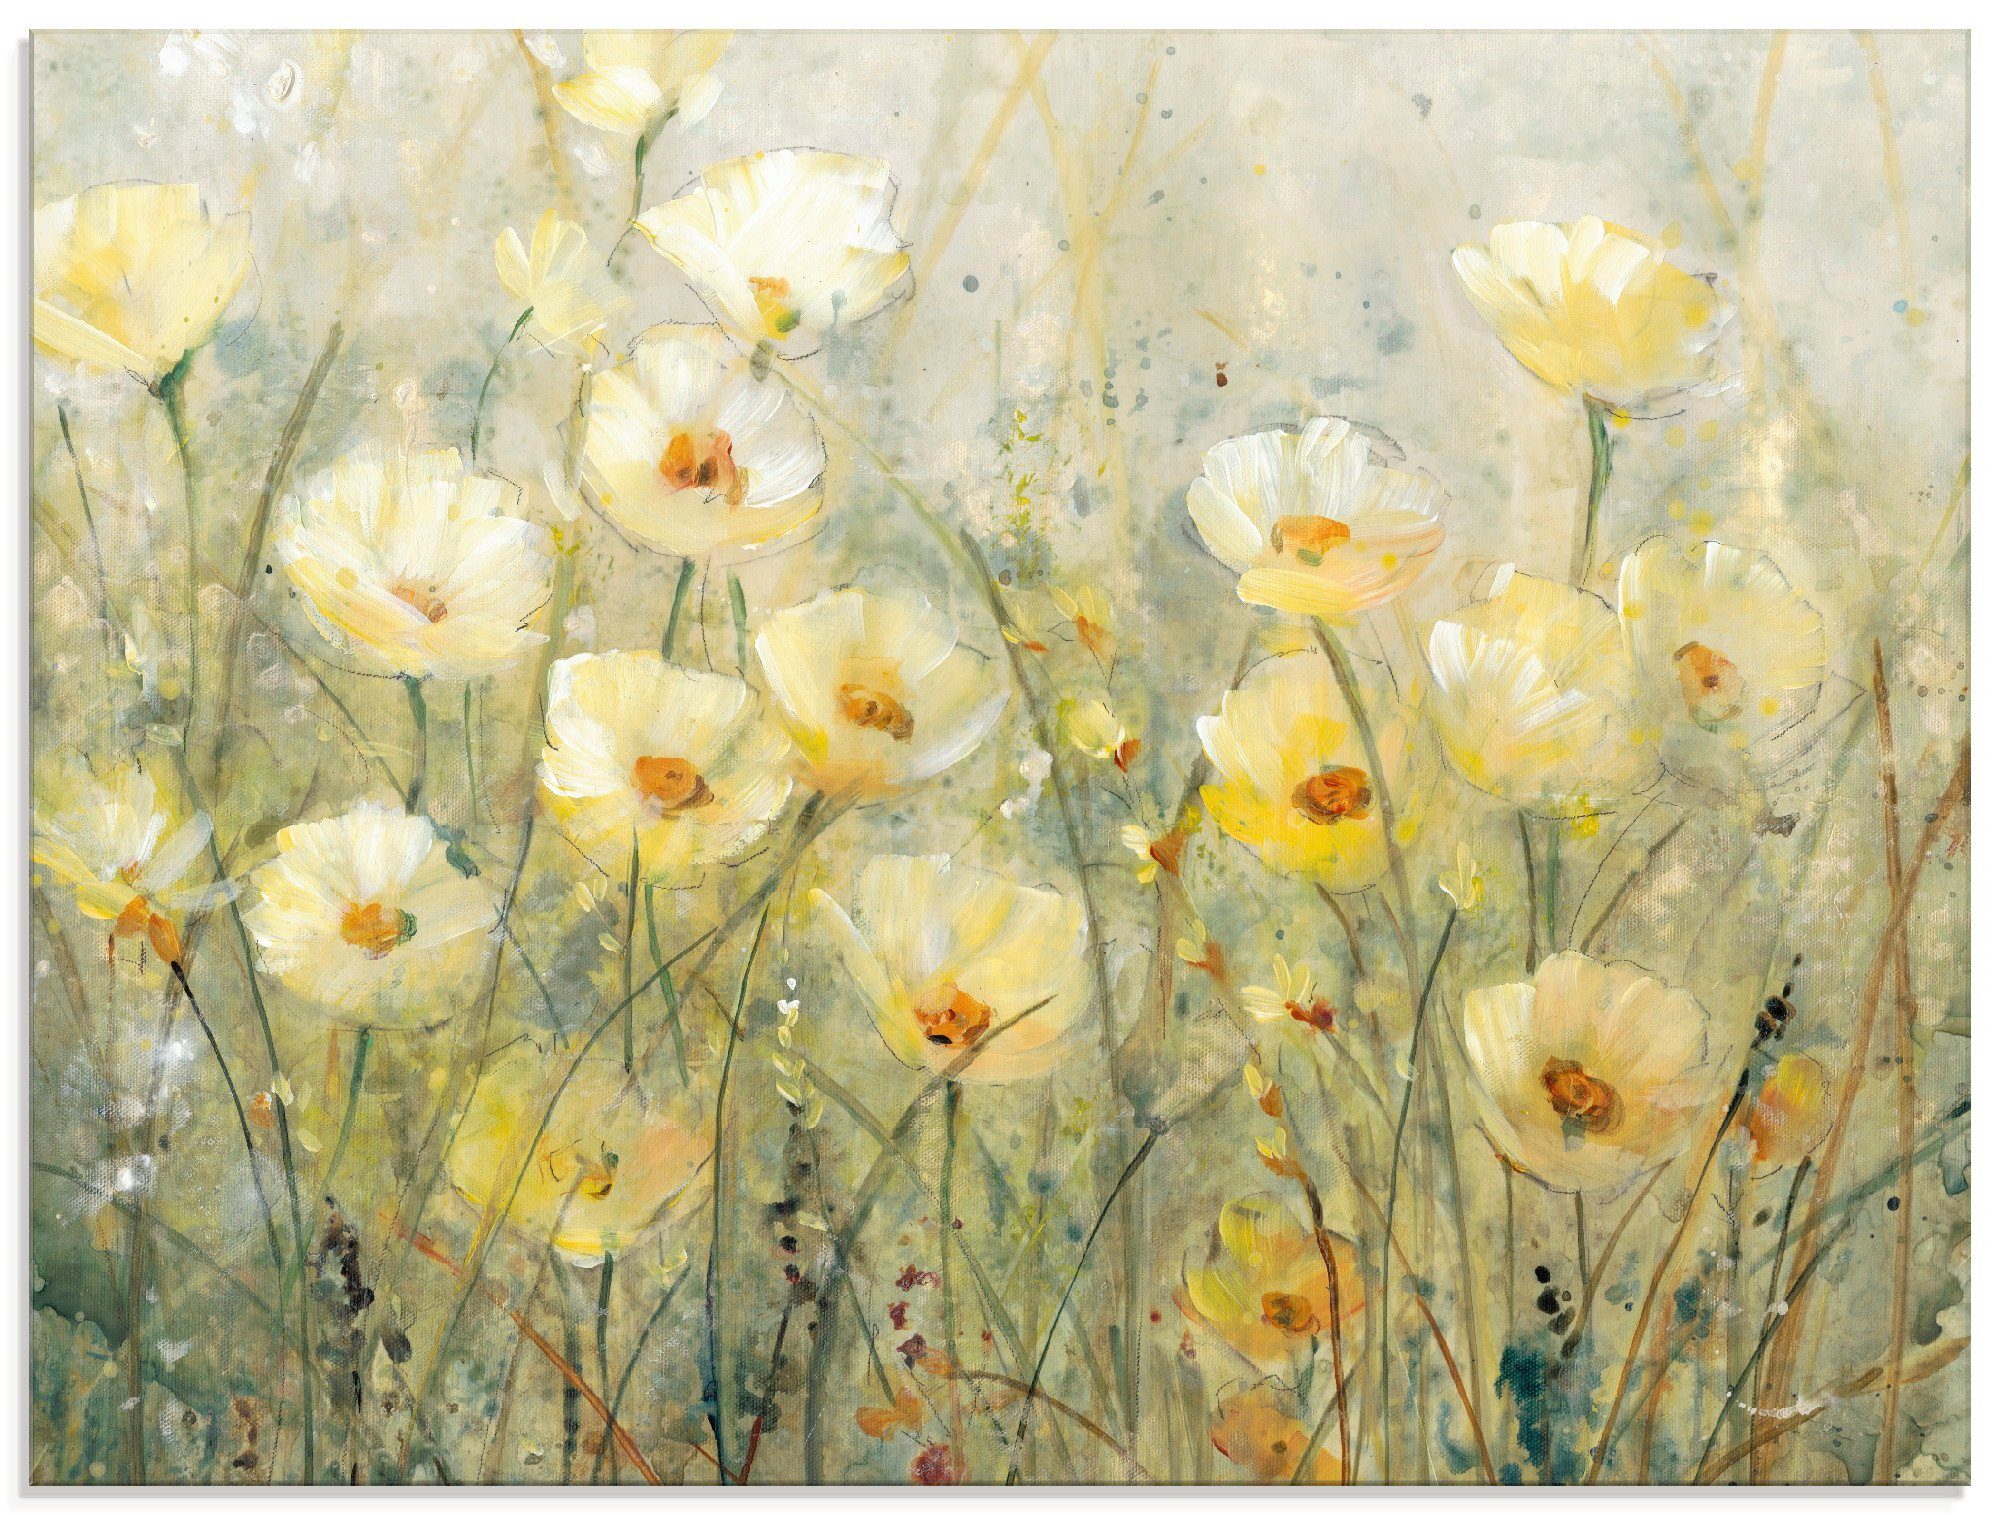 Artland Glasbild Sommer in voller Blüte I, Blumenwiese (1 St), in verschiedenen Größen